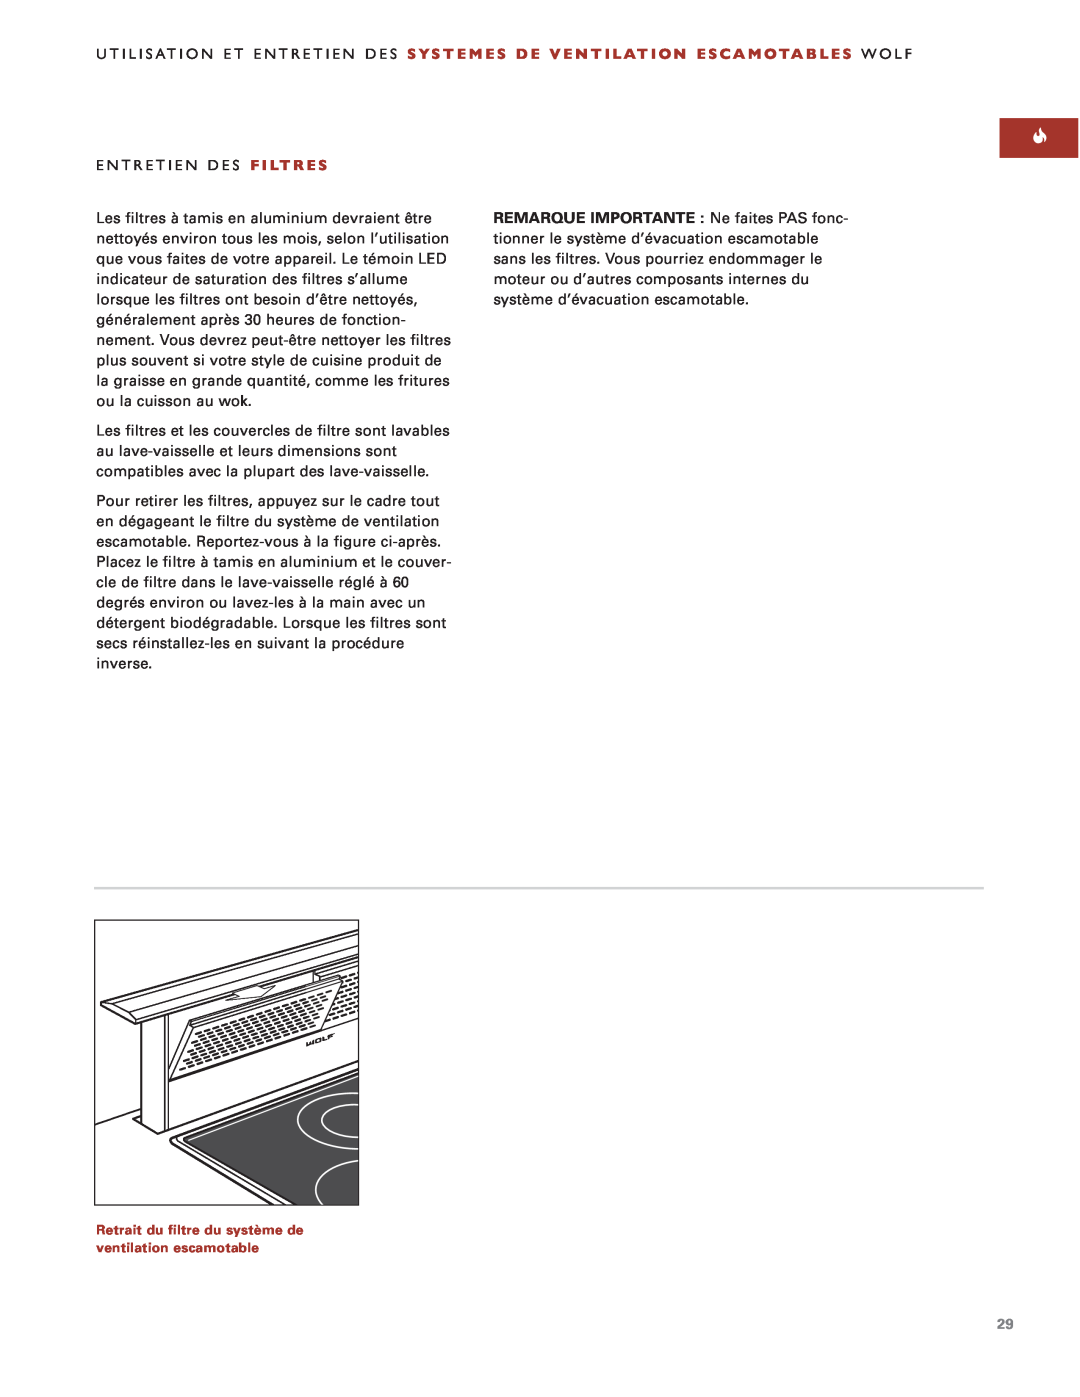 Sub-Zero Downdraft Ventilation manual Entretien Des Filtres 